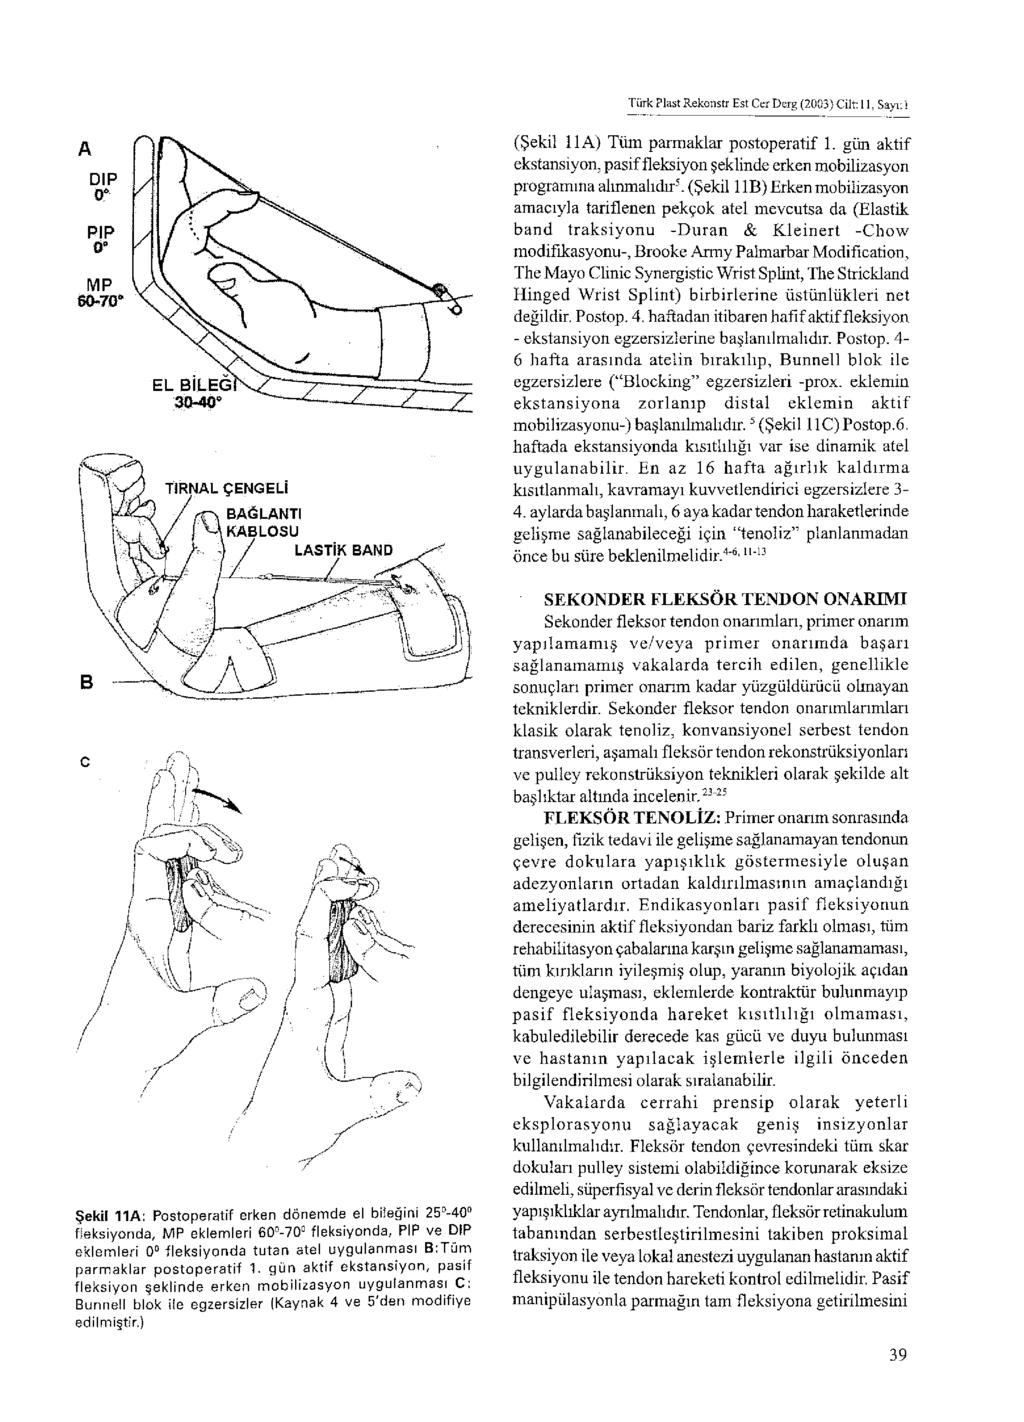 Türk Plast Rekonstr Est Cer Derg (2003) Cilt: 11, Sayı: 1 (Şekil 11 A) Tüm parmaklar postoperatif 1. gün aktif ekstansiyon, pasif fleksiyon şeklinde erken mobilizasyon programına alınmalıdır5.